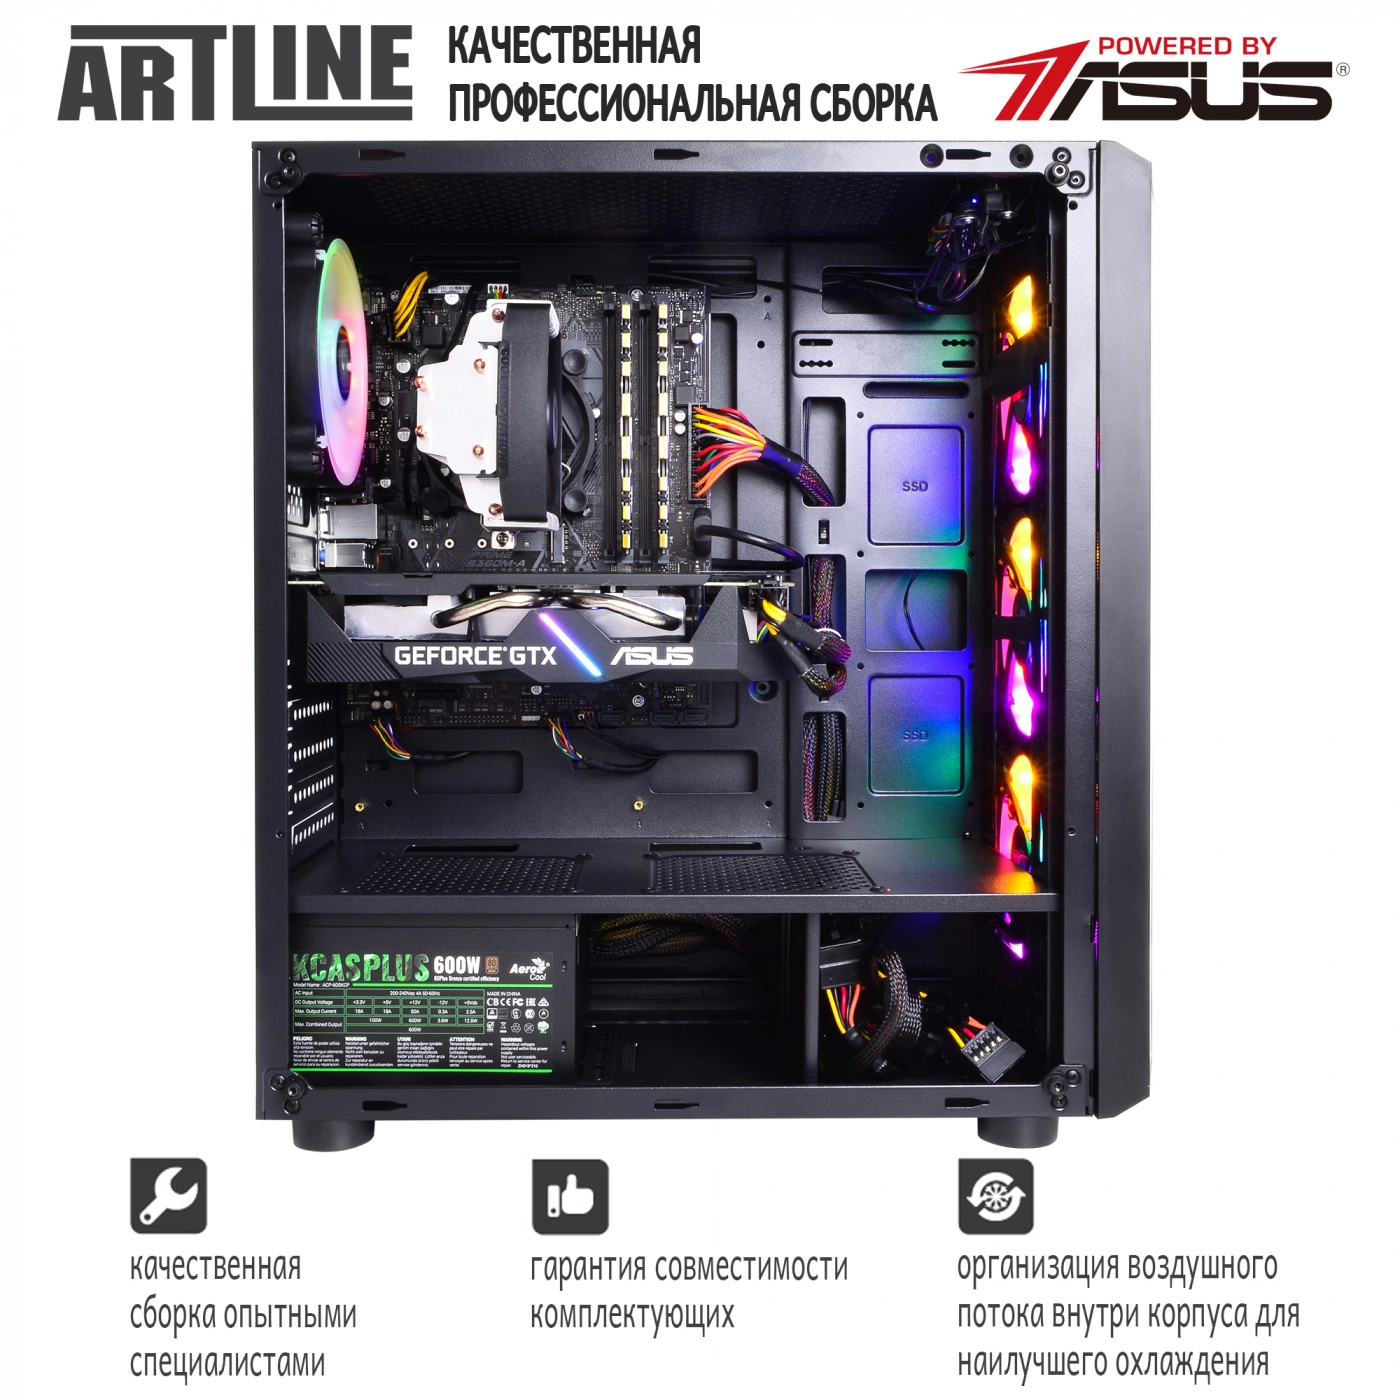 Купить Компьютер ARTLINE Gaming X61v12 - фото 9